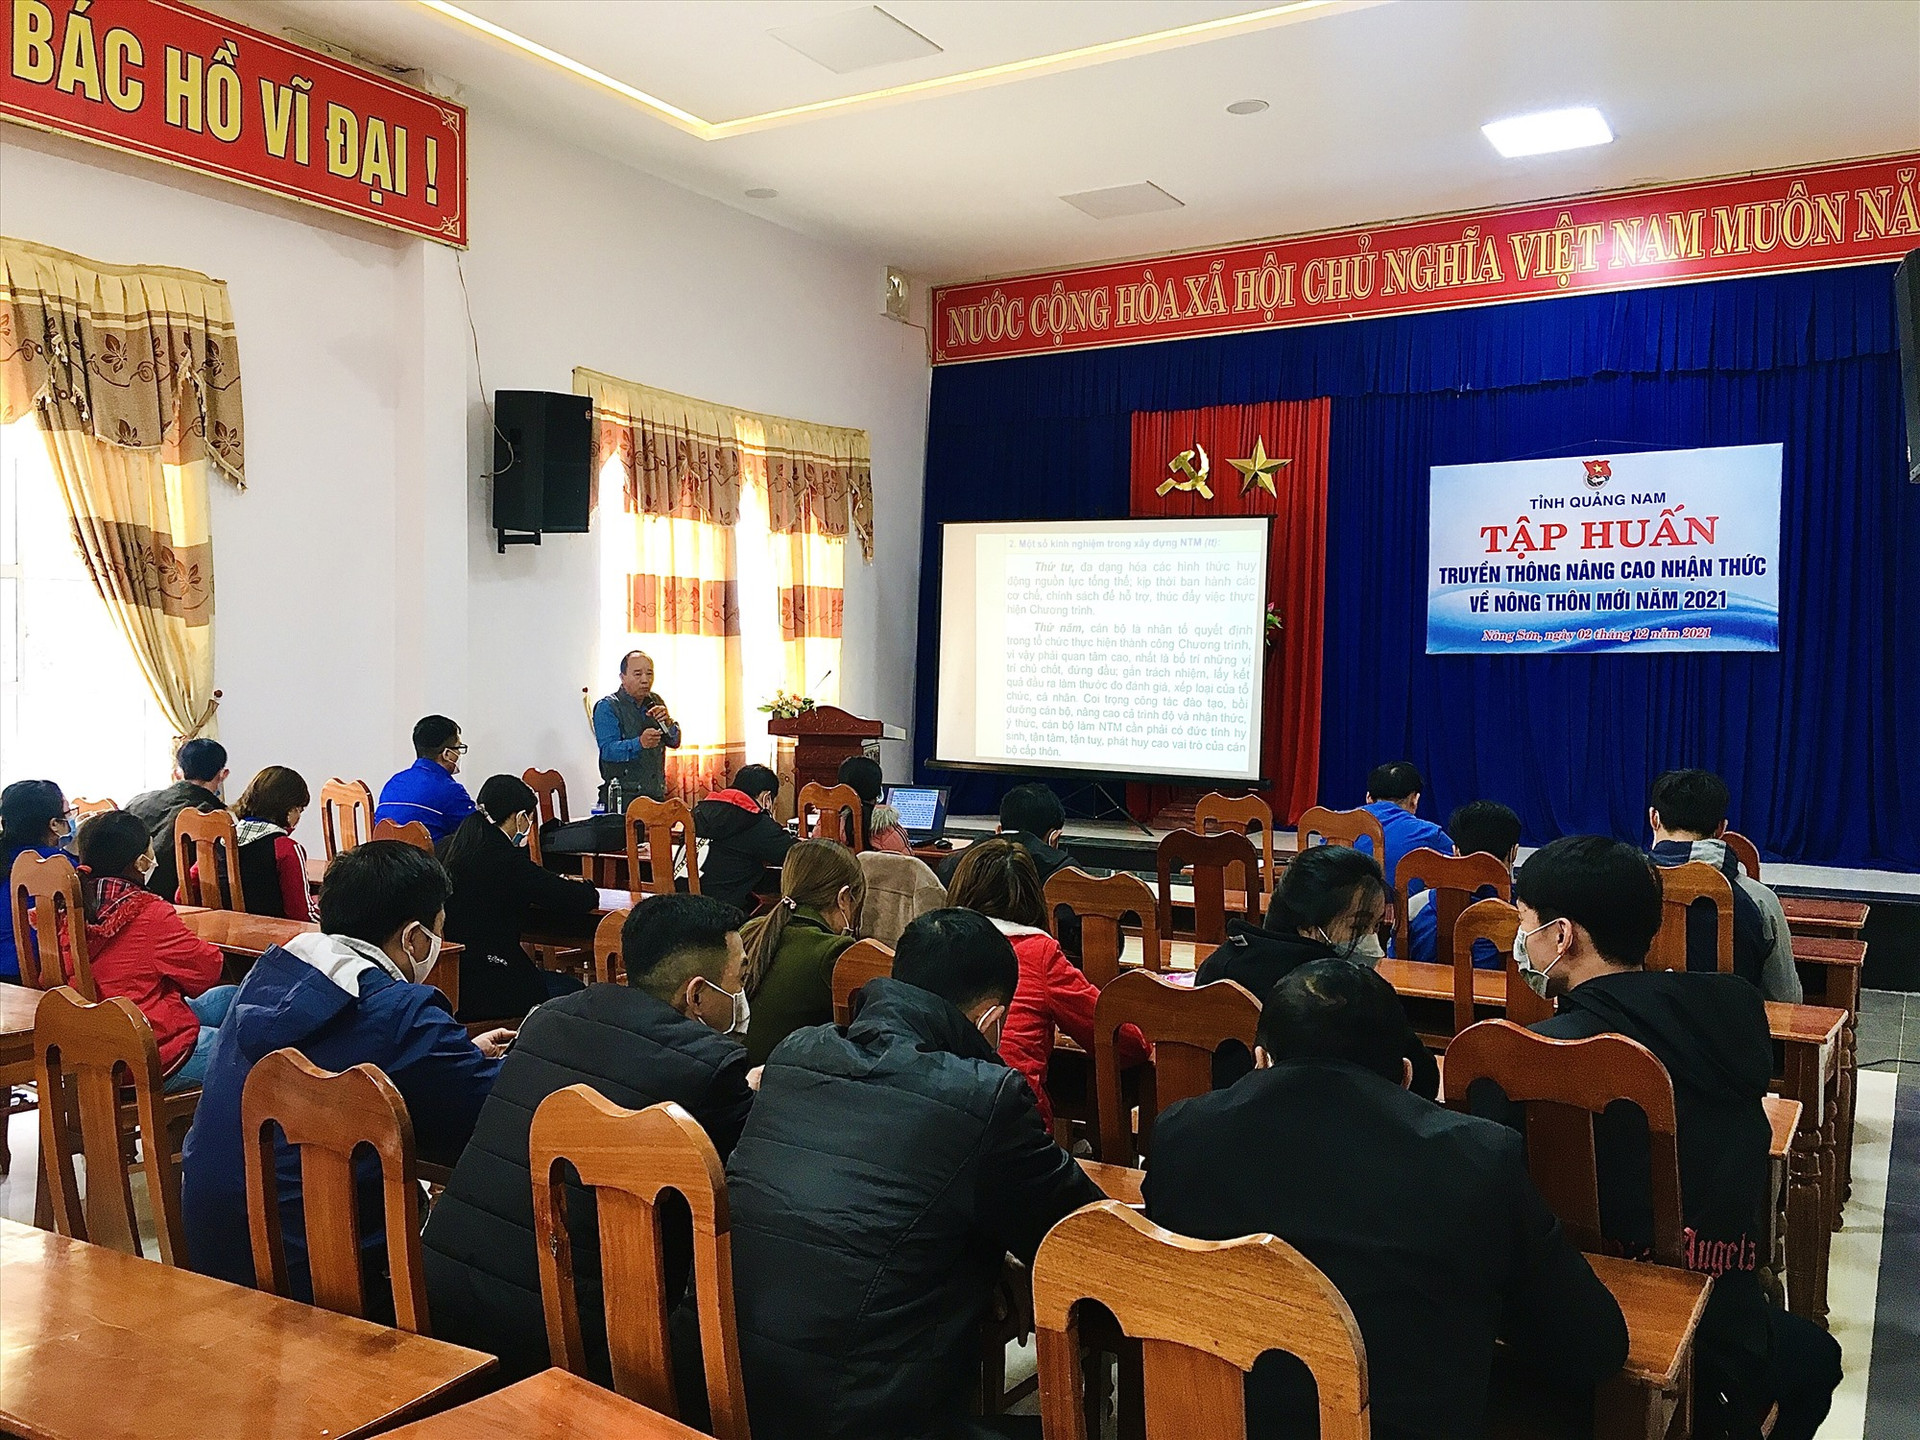 Báo cáo viên Phòng NN&PTNT huyện Nông Sơn truyền thông về xây dựng nông thôn mới. Ảnh: LÊ THÔNG